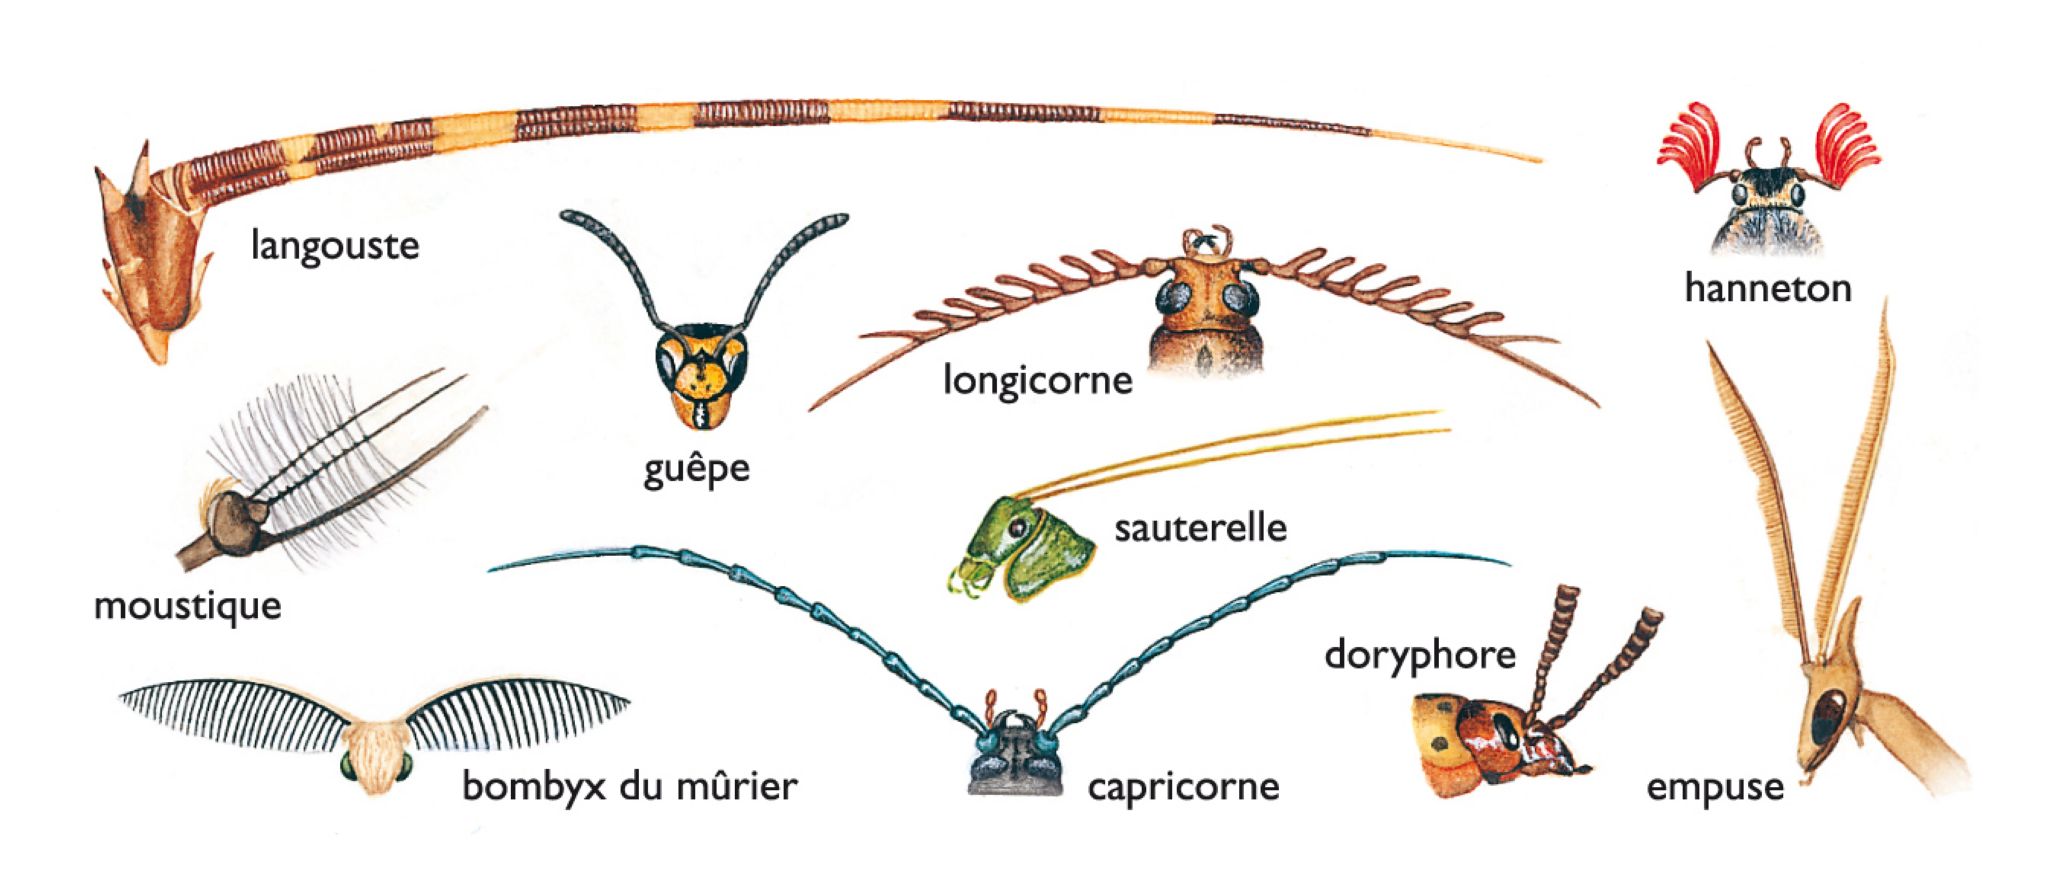 comparaison des antennes de quelques animaux